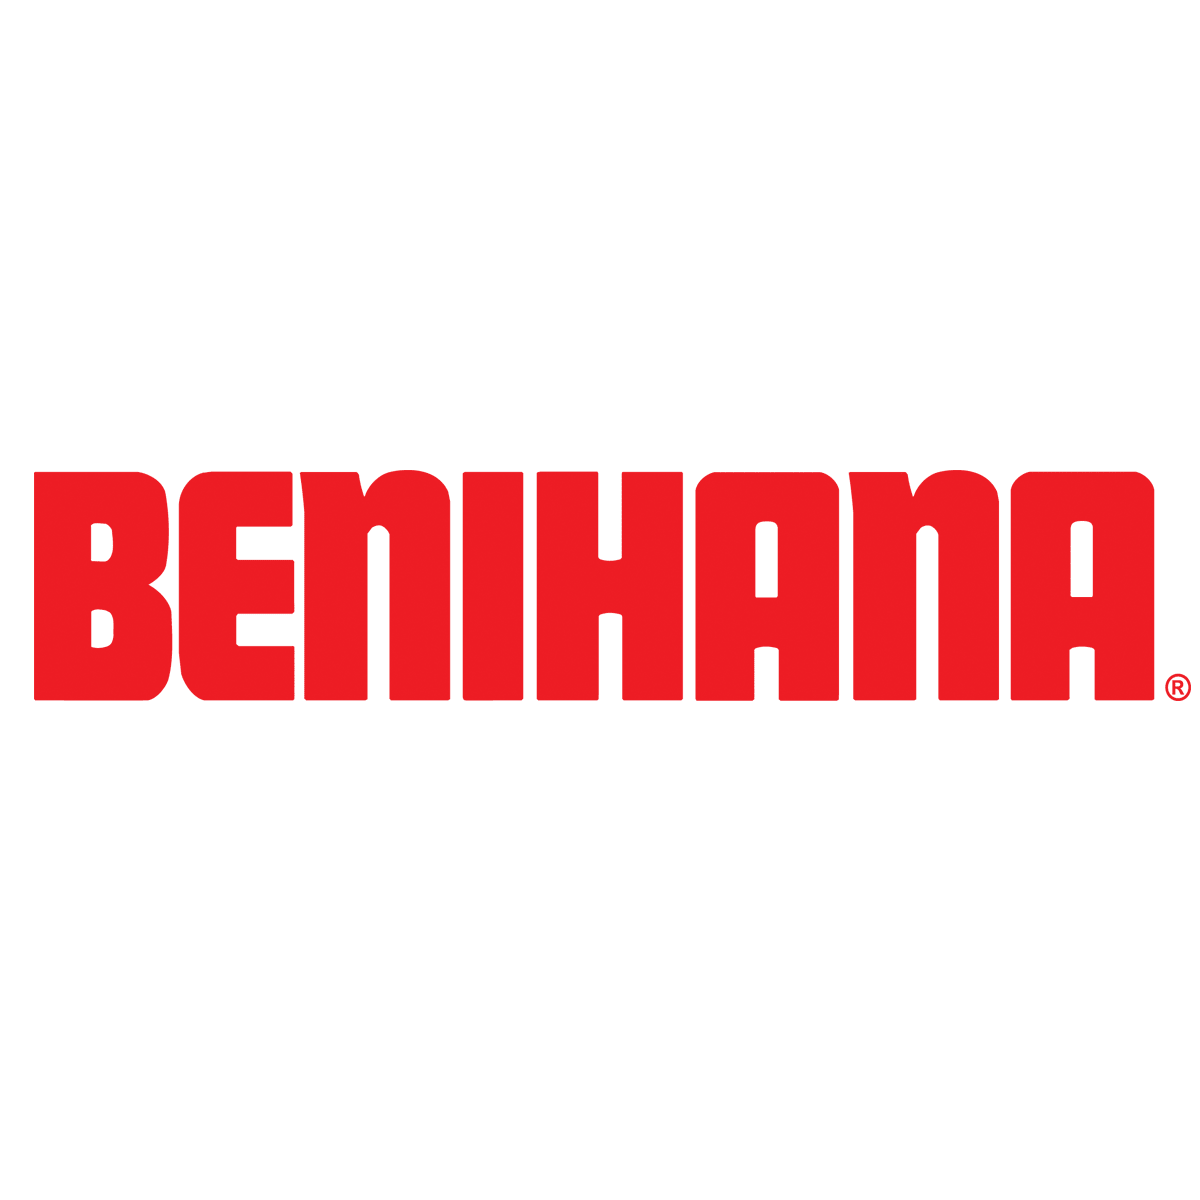 Benihana Menu with Prices